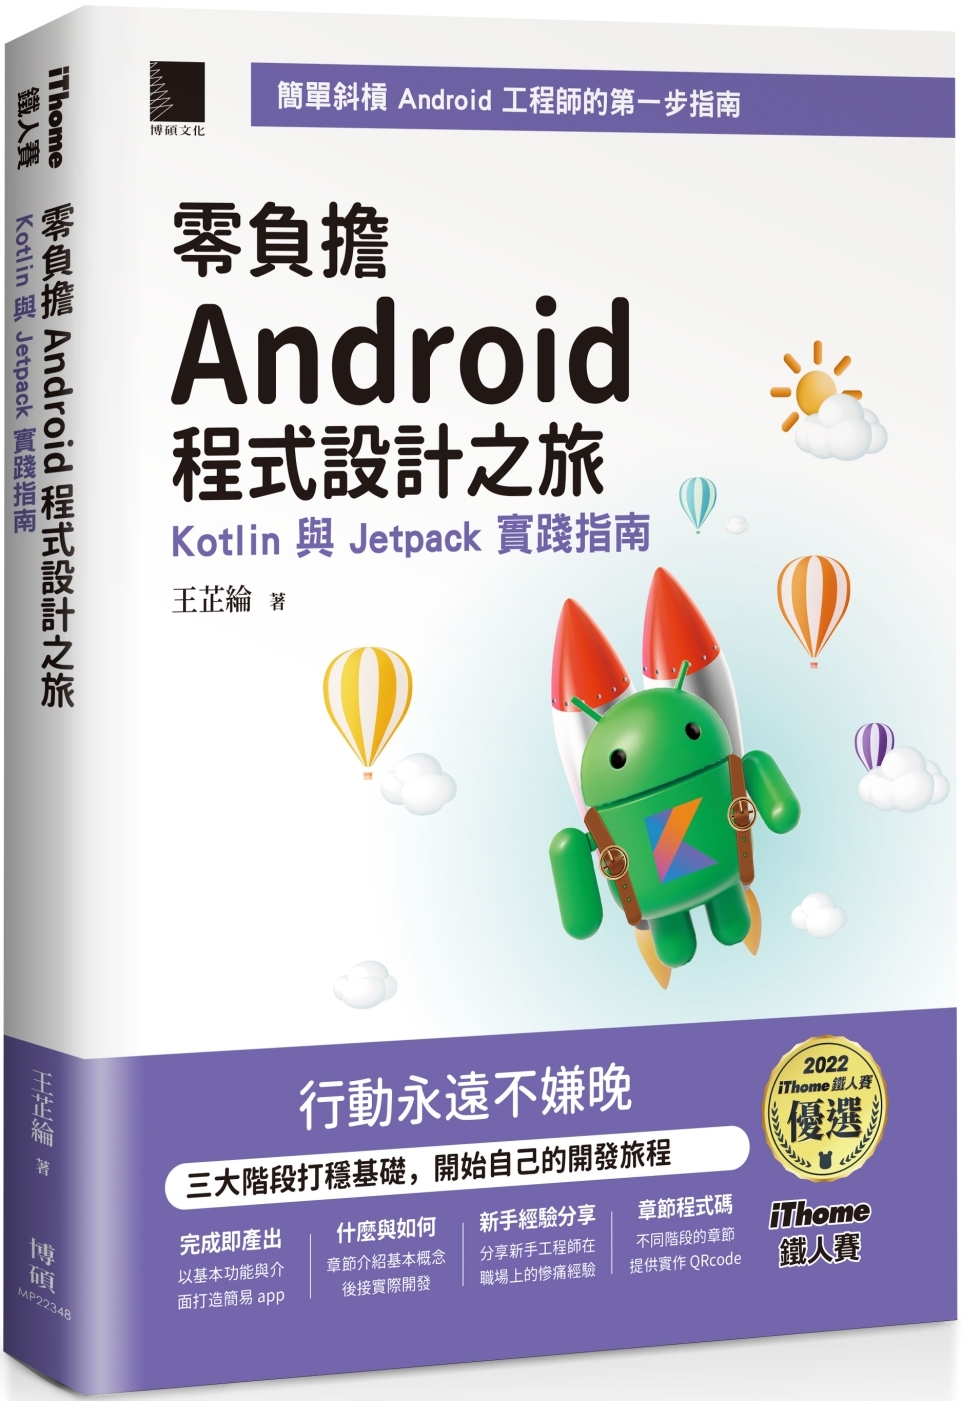 零負擔 Android 程式設計之旅：Kotlin 與 Jetpack 實踐指南（iThome鐵人賽系列書）【軟精裝】